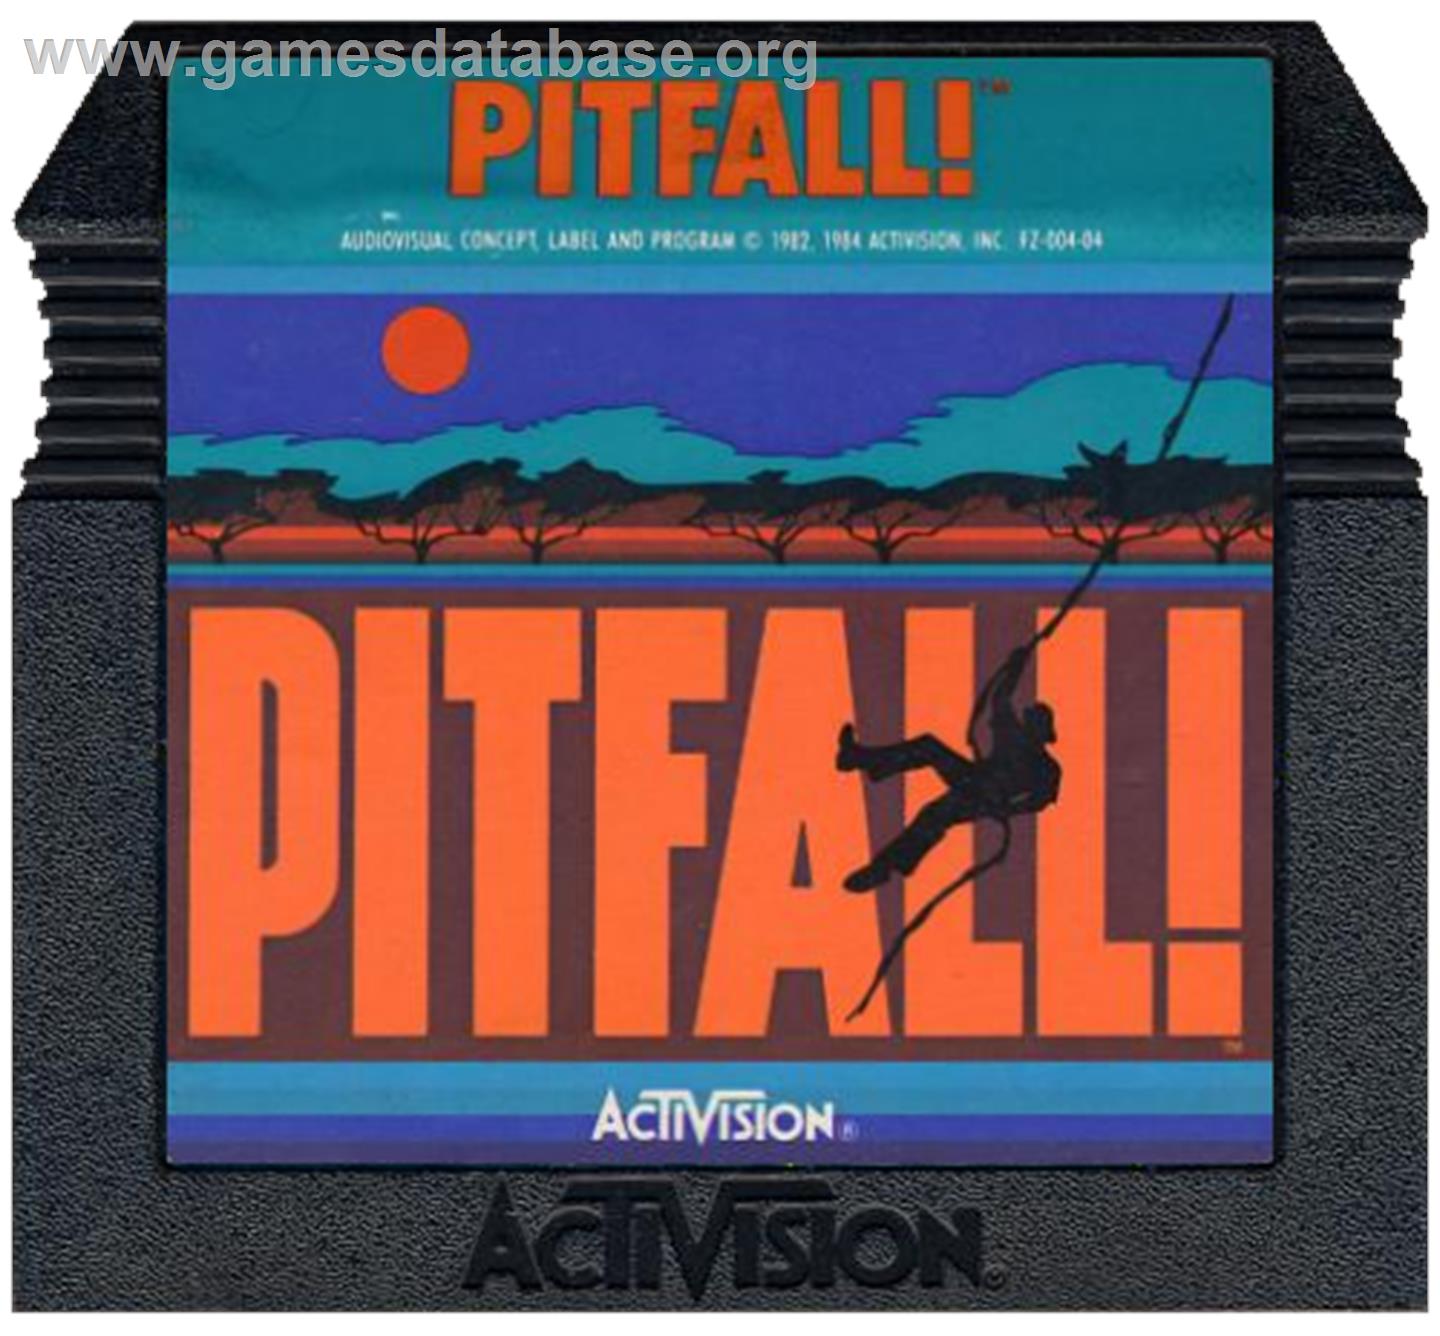 Pitfall - Atari 5200 - Artwork - Cartridge